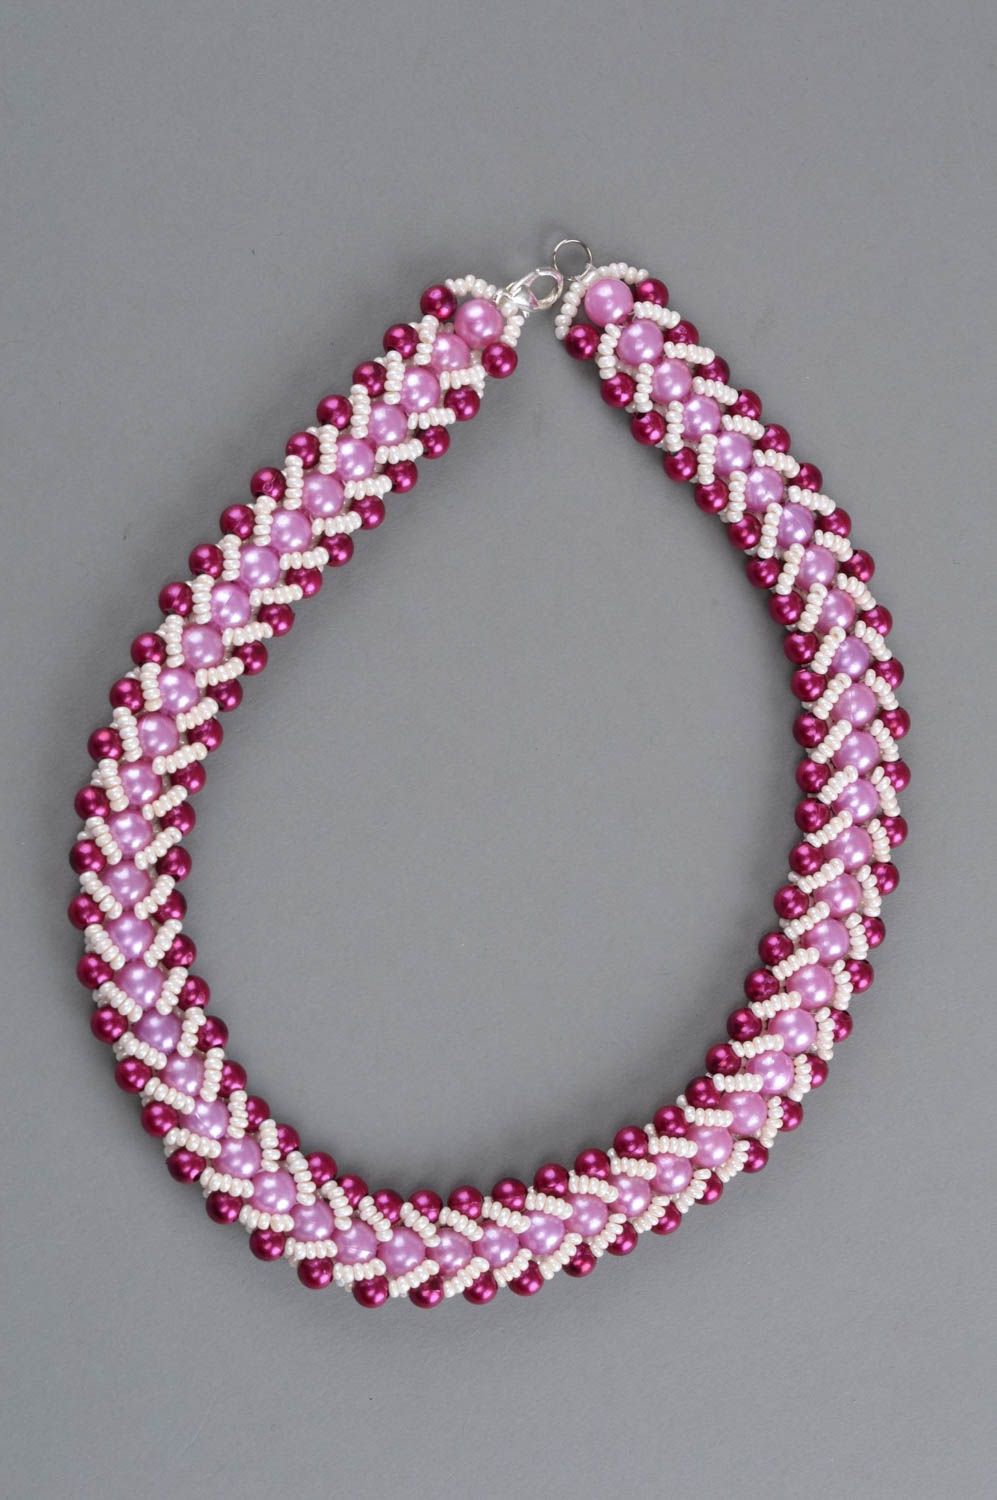 Ожерелье из бисера и бусин ручной работы красивое авторское в розовых тонах фото 2